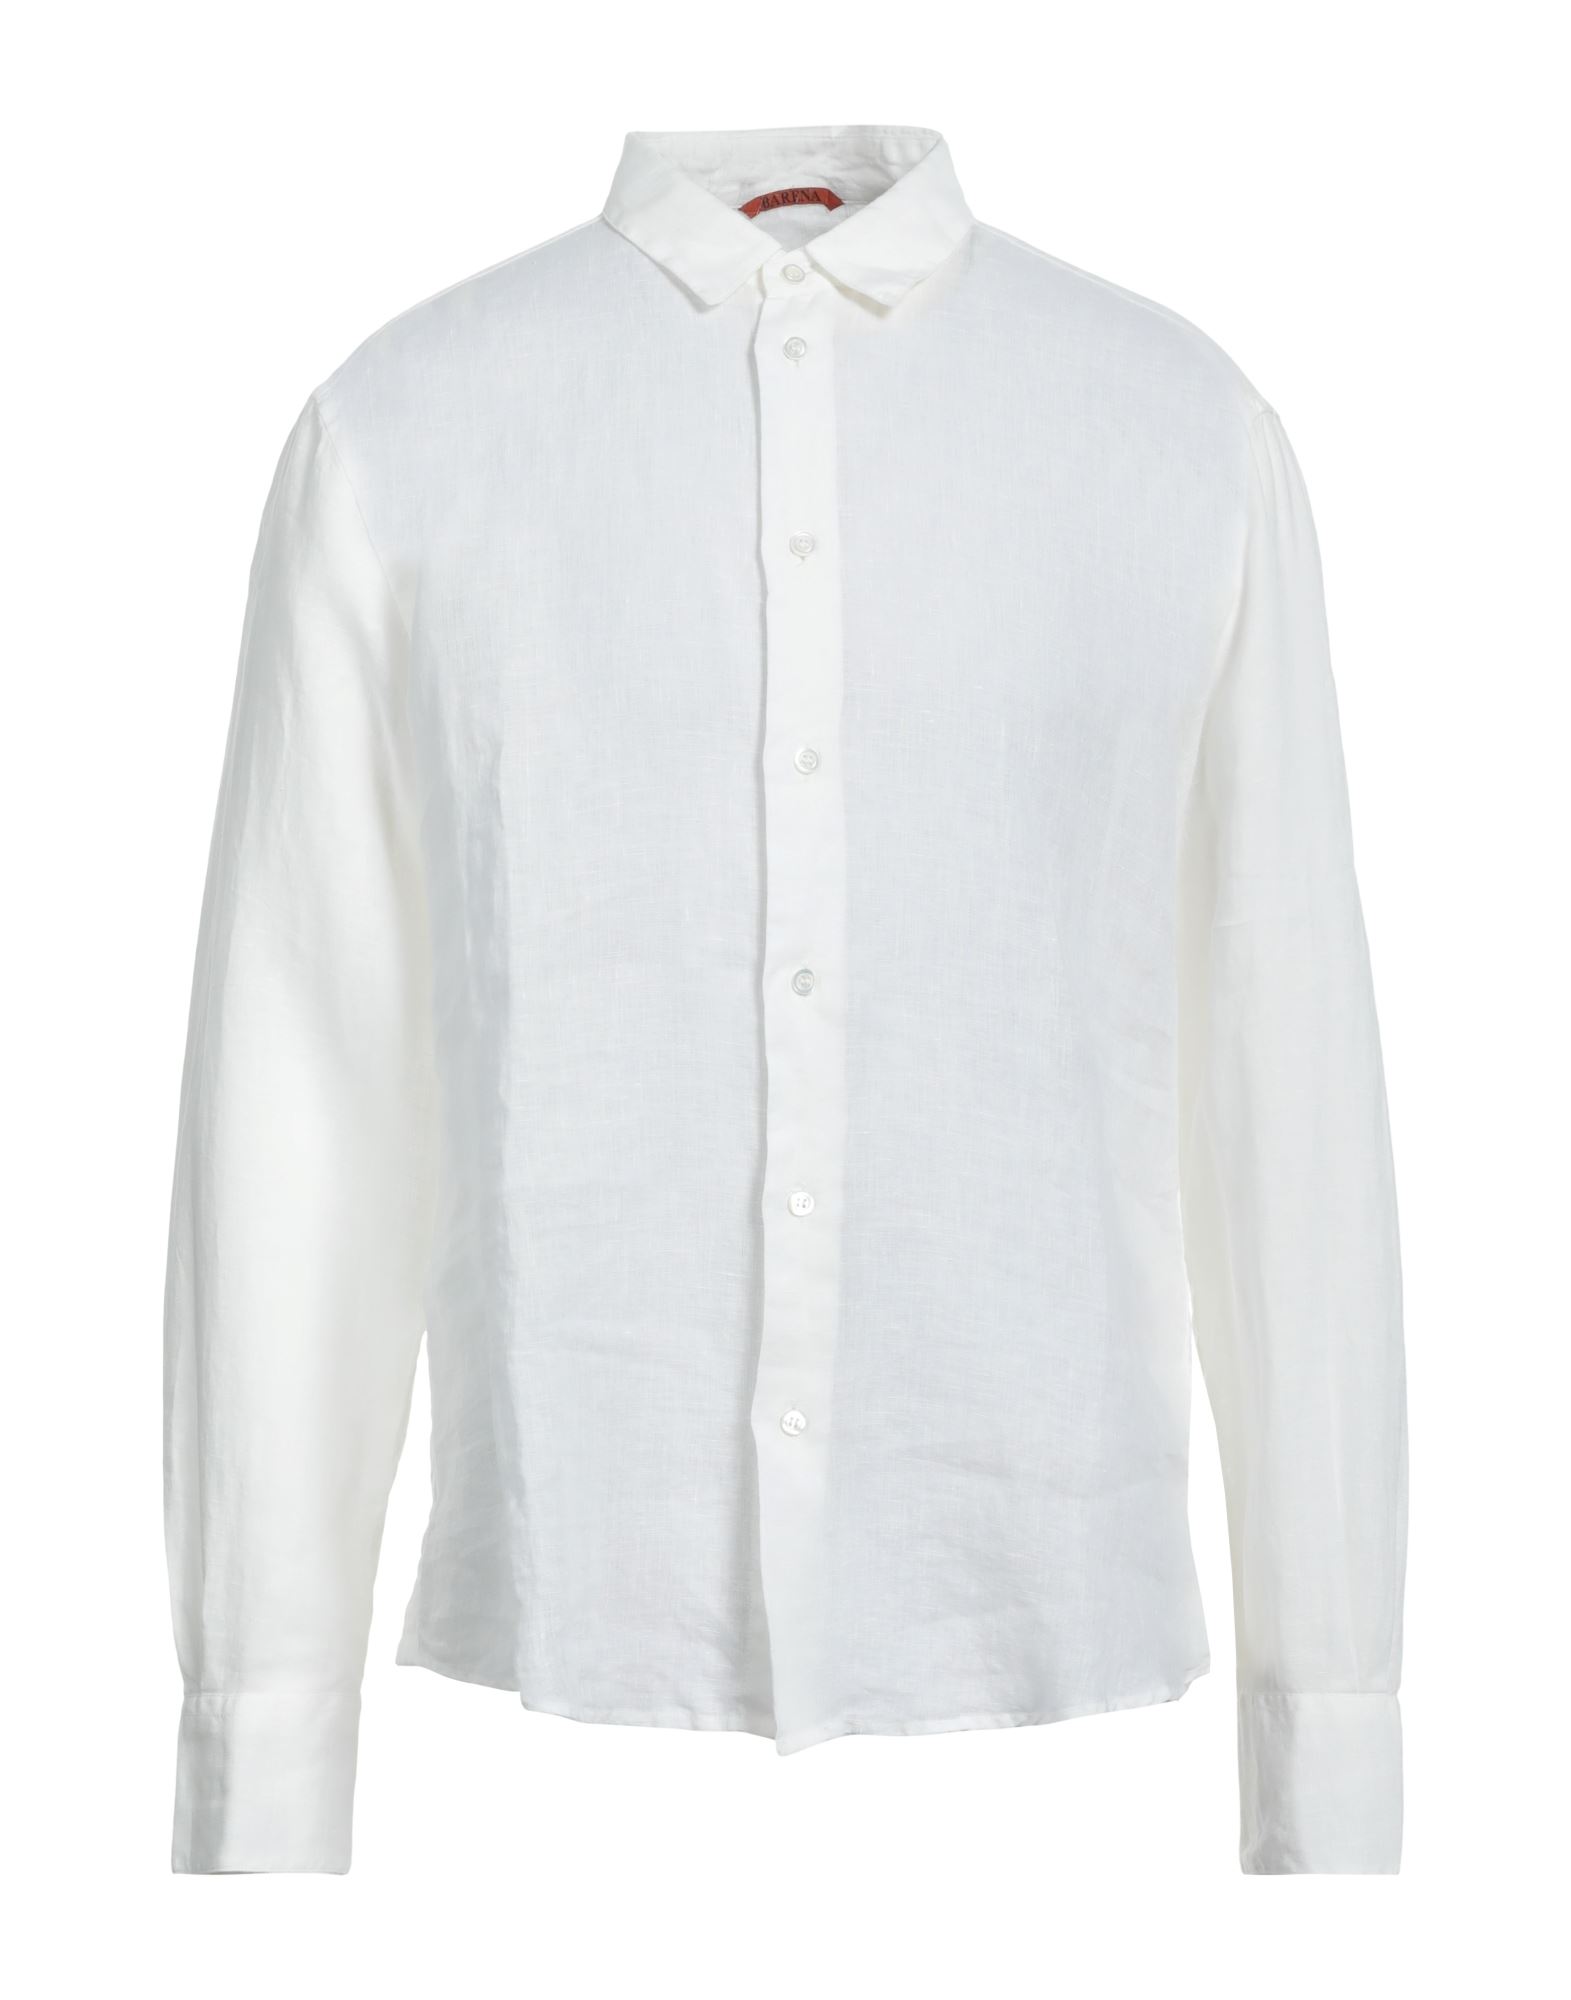 Barena Venezia Barena Man Shirt Ivory Size 42 Linen In White